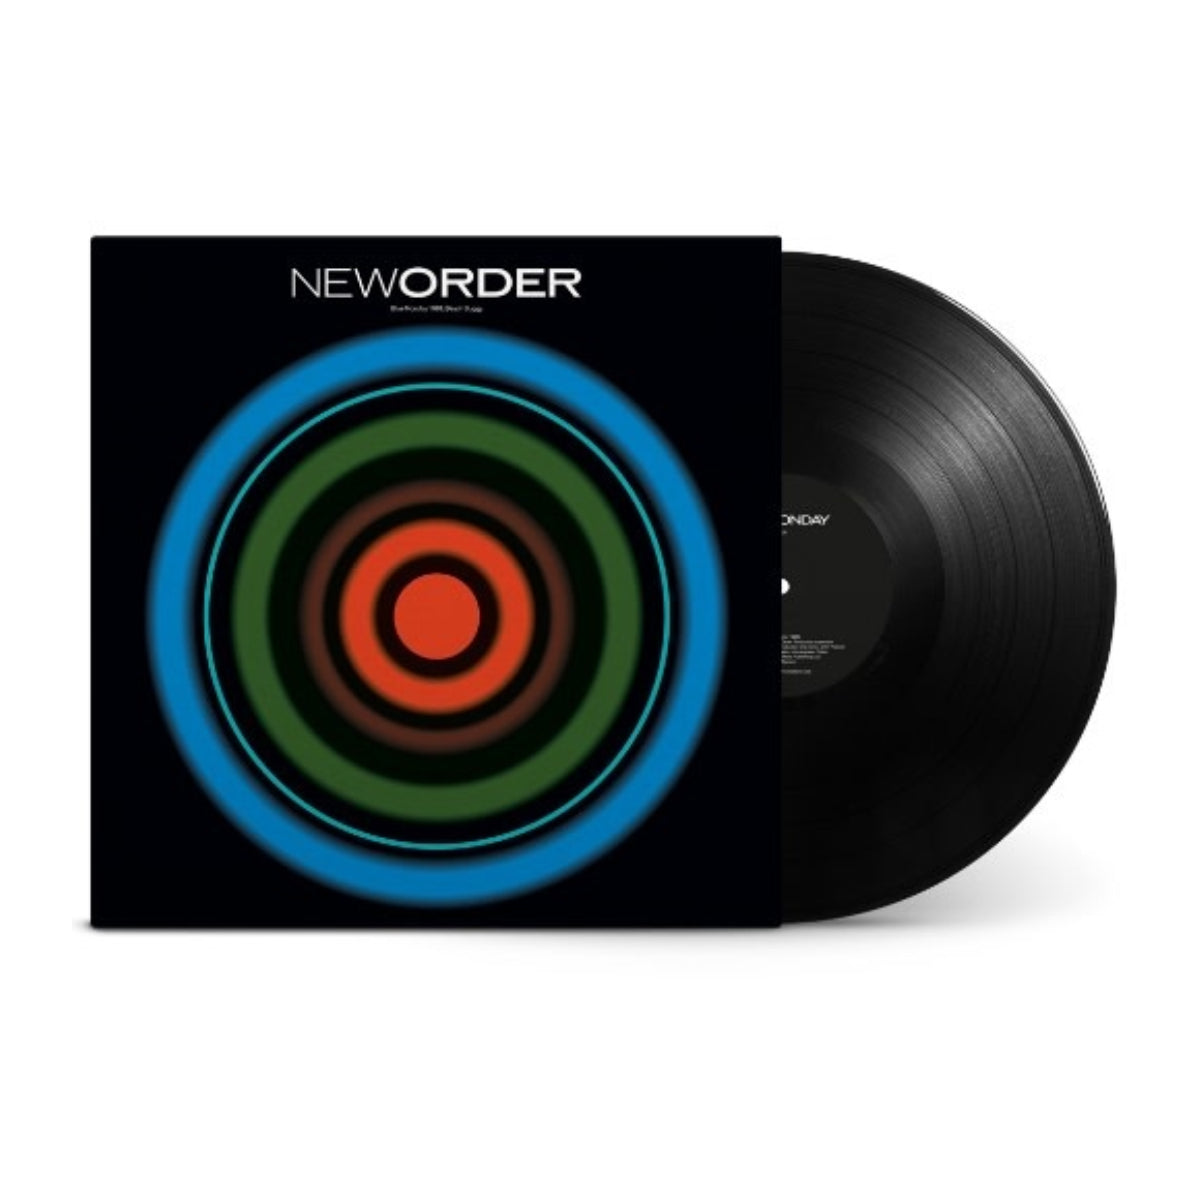 New Order - Blue Monday 88 Vinyl 12" Single